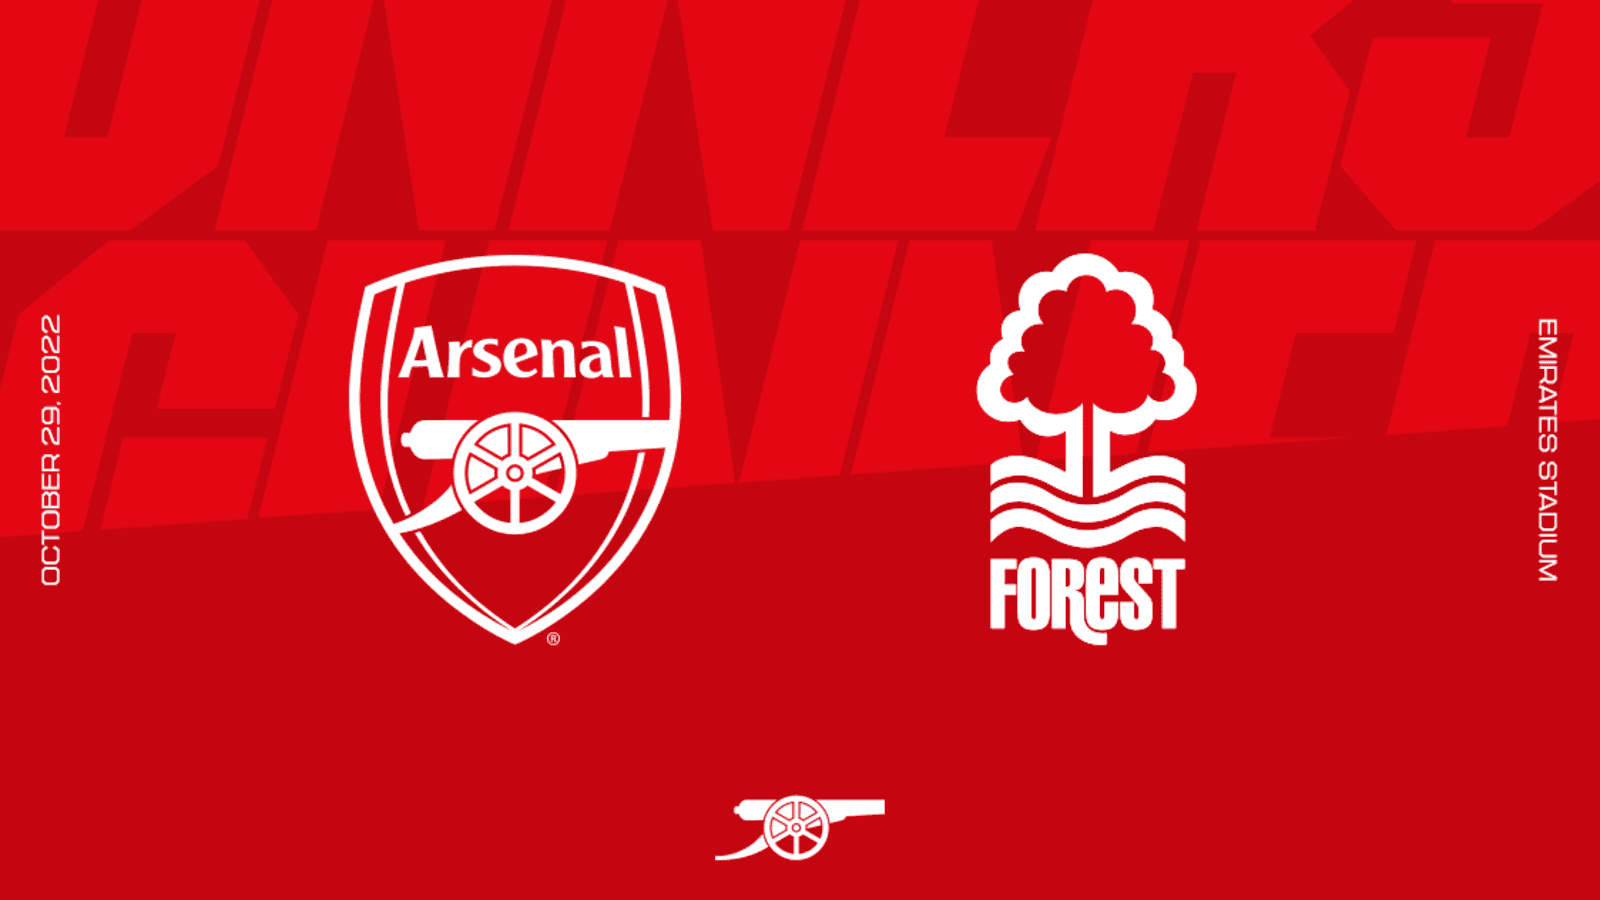 Arsenal vs nottm Forest